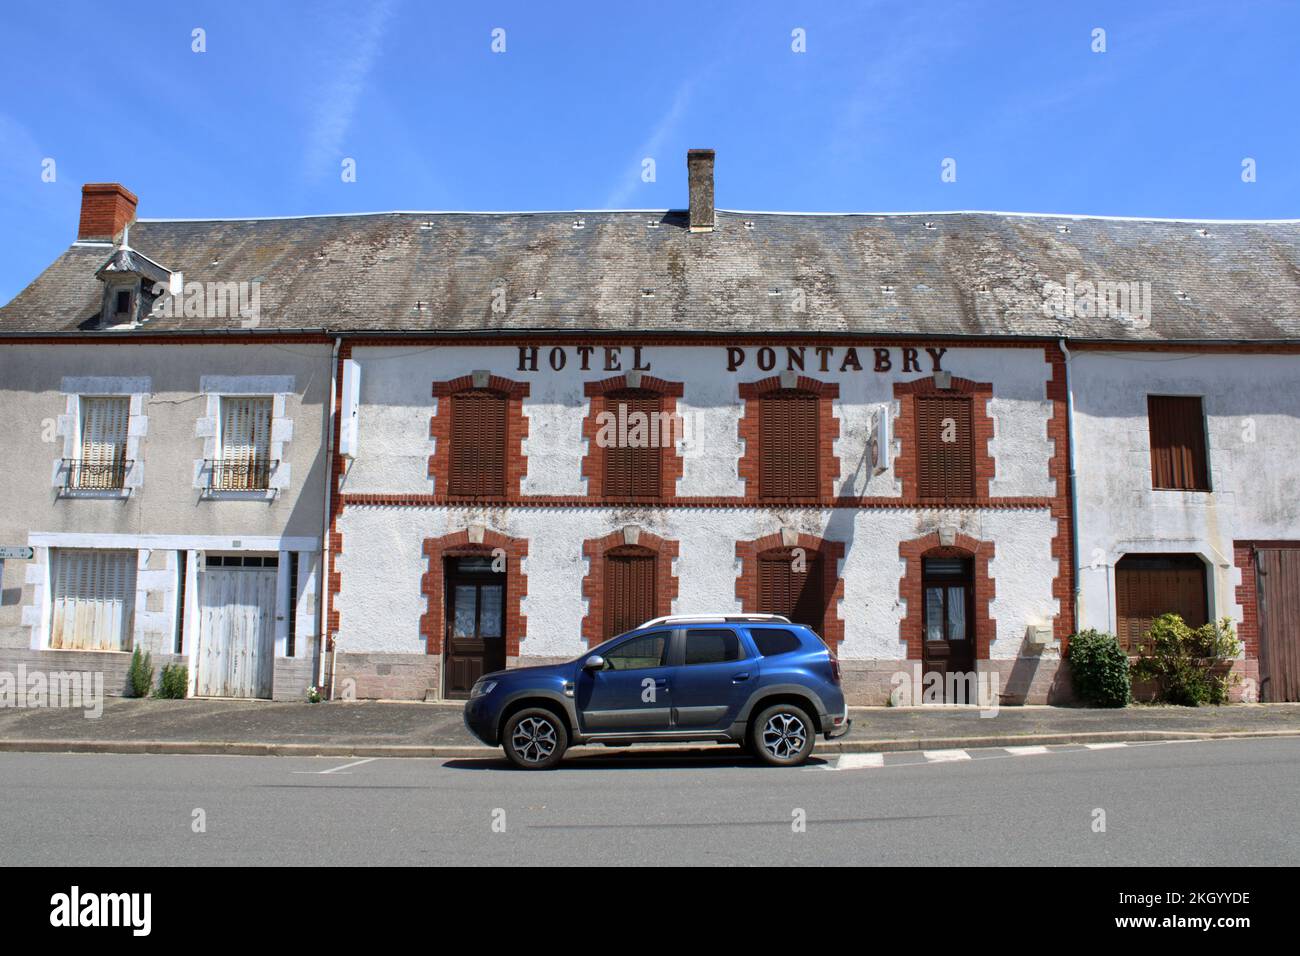 Vue sur l'ancien Hôtel Pontabry situé dans la ville rurale française de Châteaumeillant dans la Creuse du centre de la France. Banque D'Images